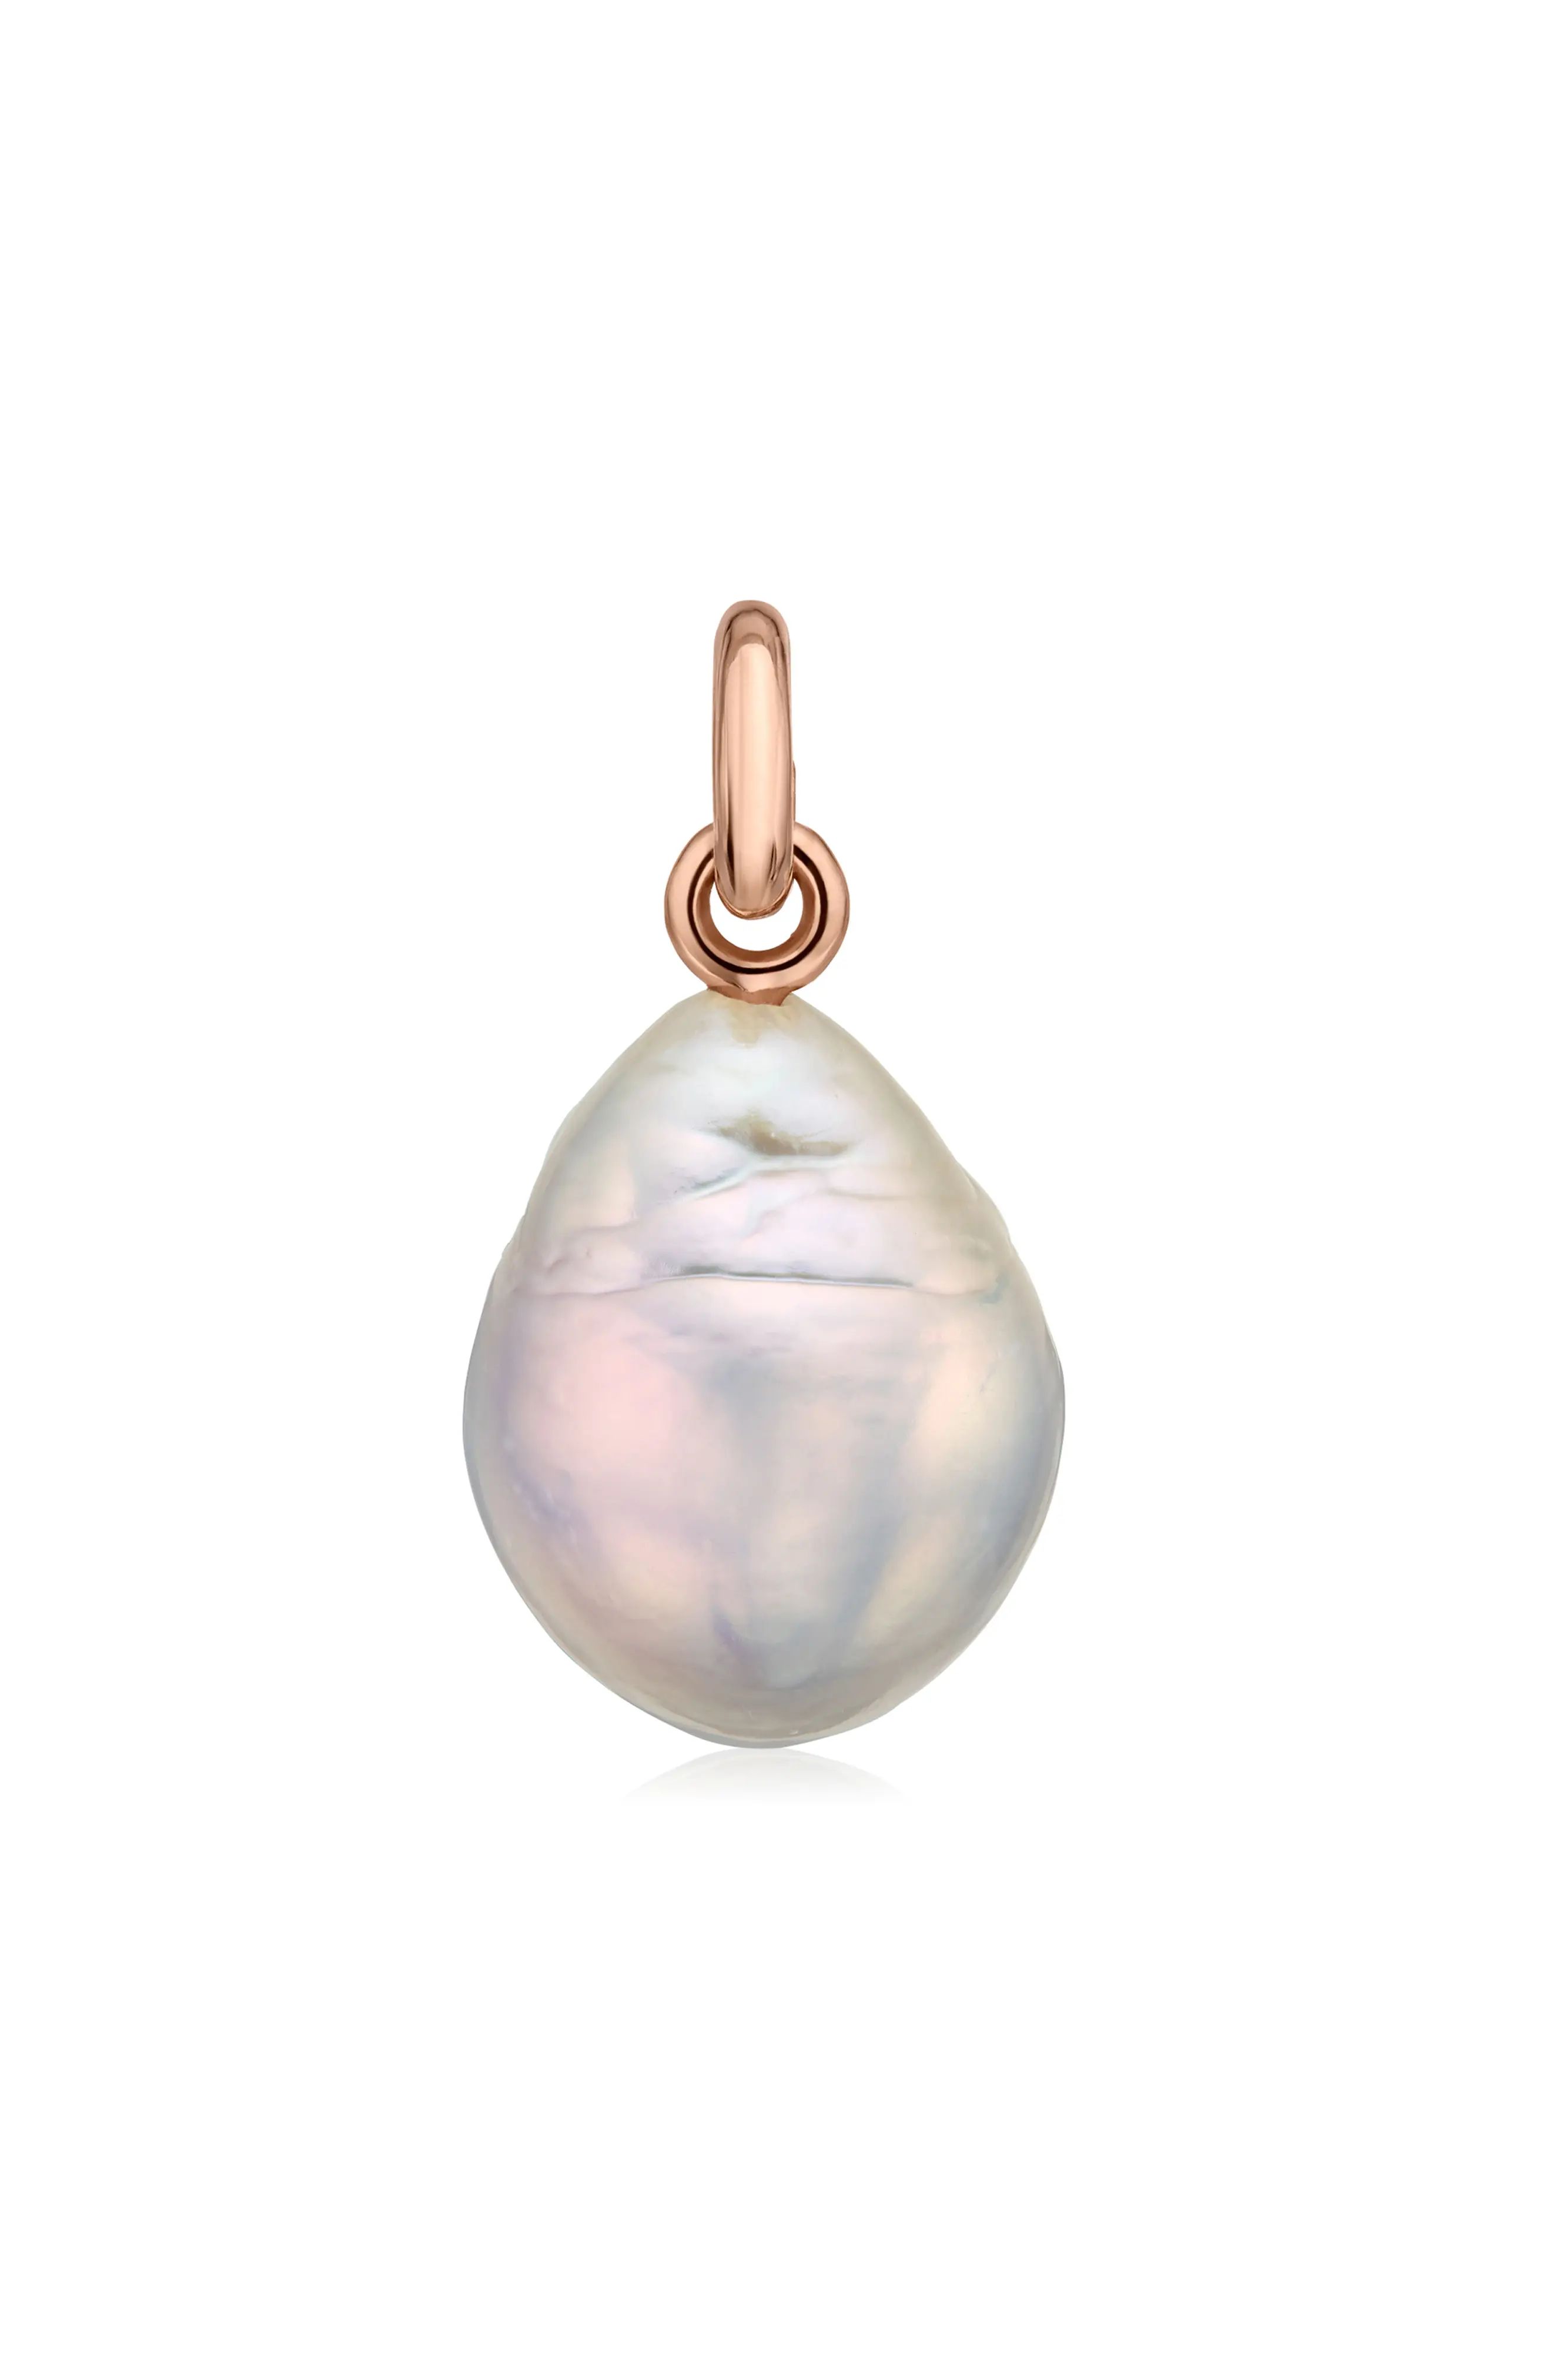 Monica Vinader Nura Baroque Pearl Necklace Enhancer in 18K Rose Gold at Nordstrom | Nordstrom